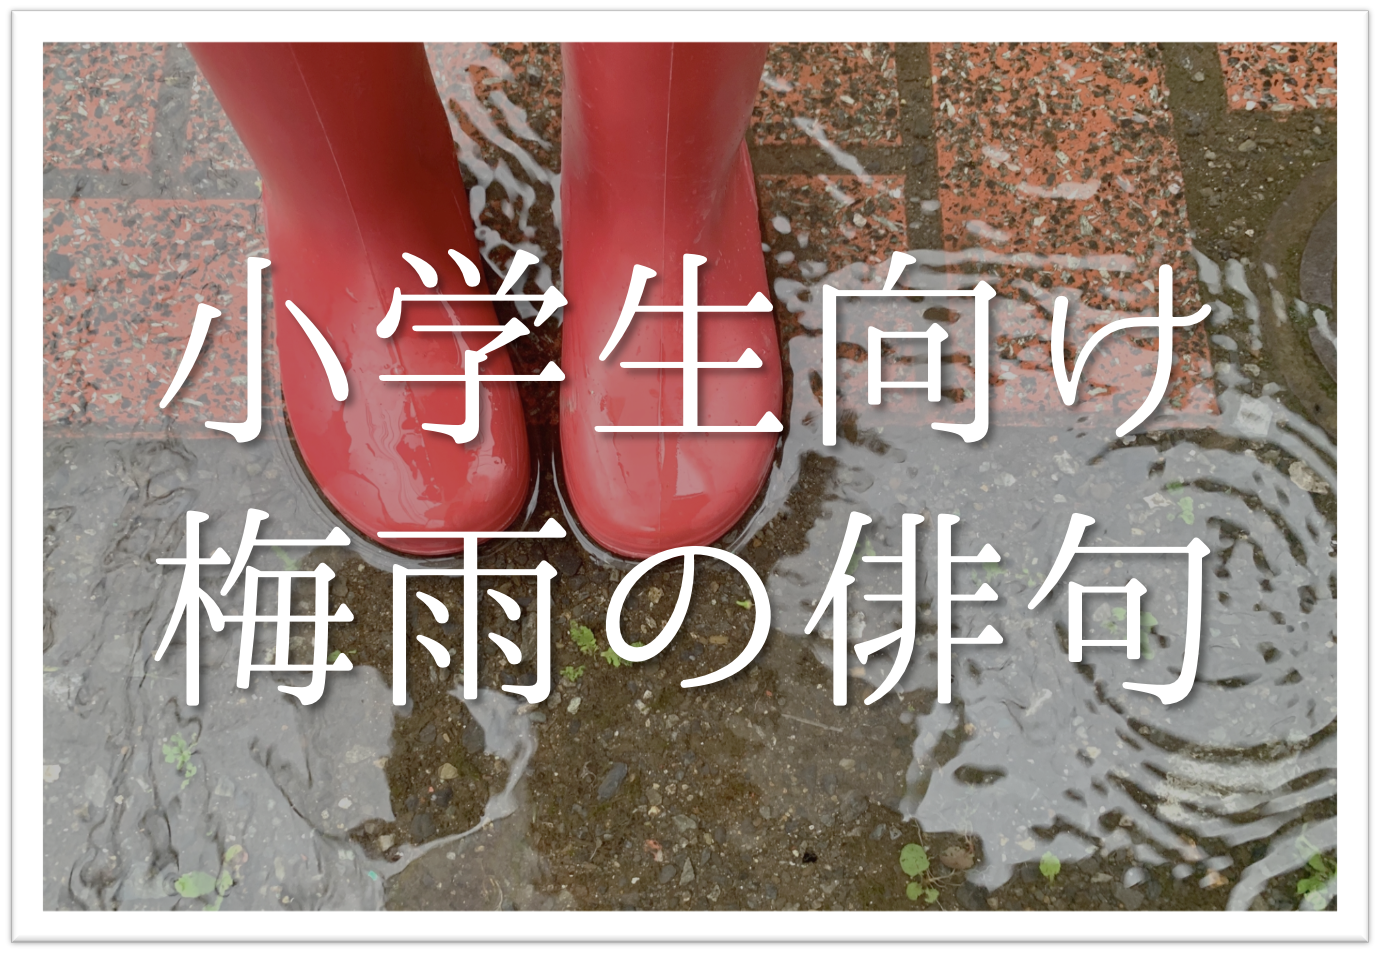 【梅雨の季語を使った俳句 20選】小学生向け!!面白い俳句ネタ例を紹介します